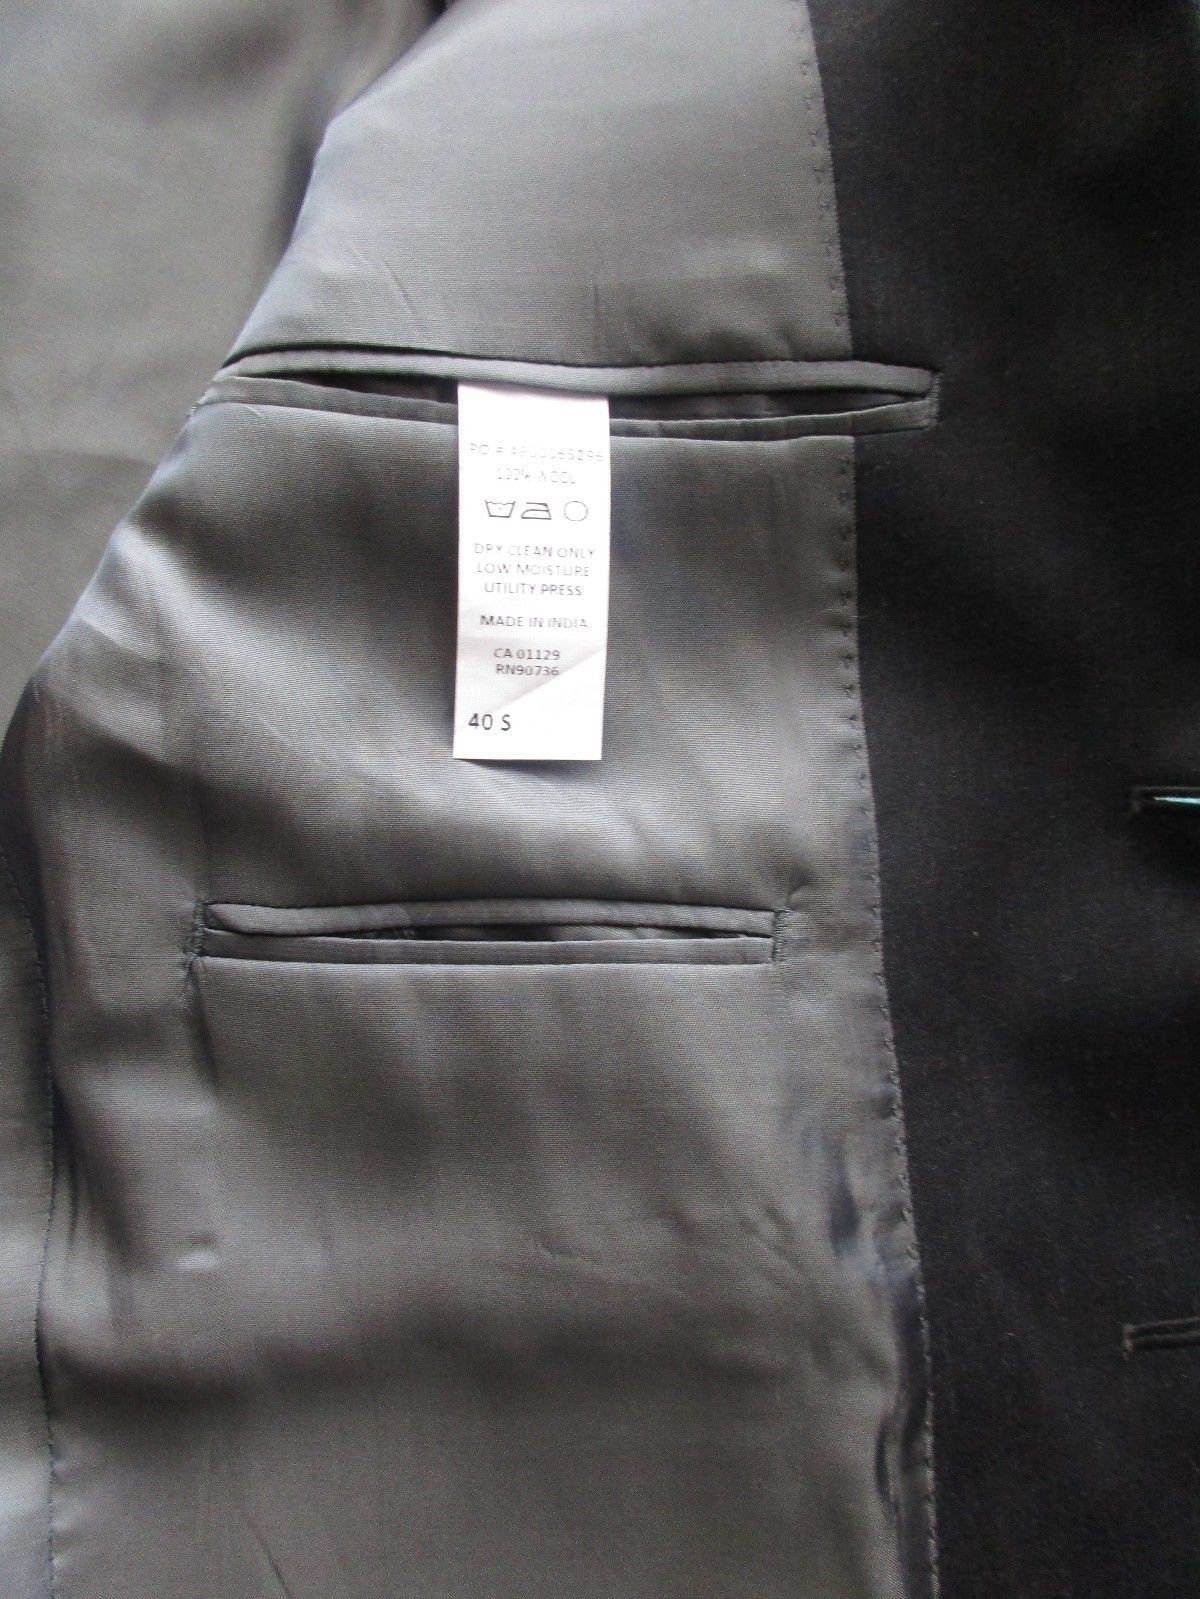 calvin klein quilted puffer vest